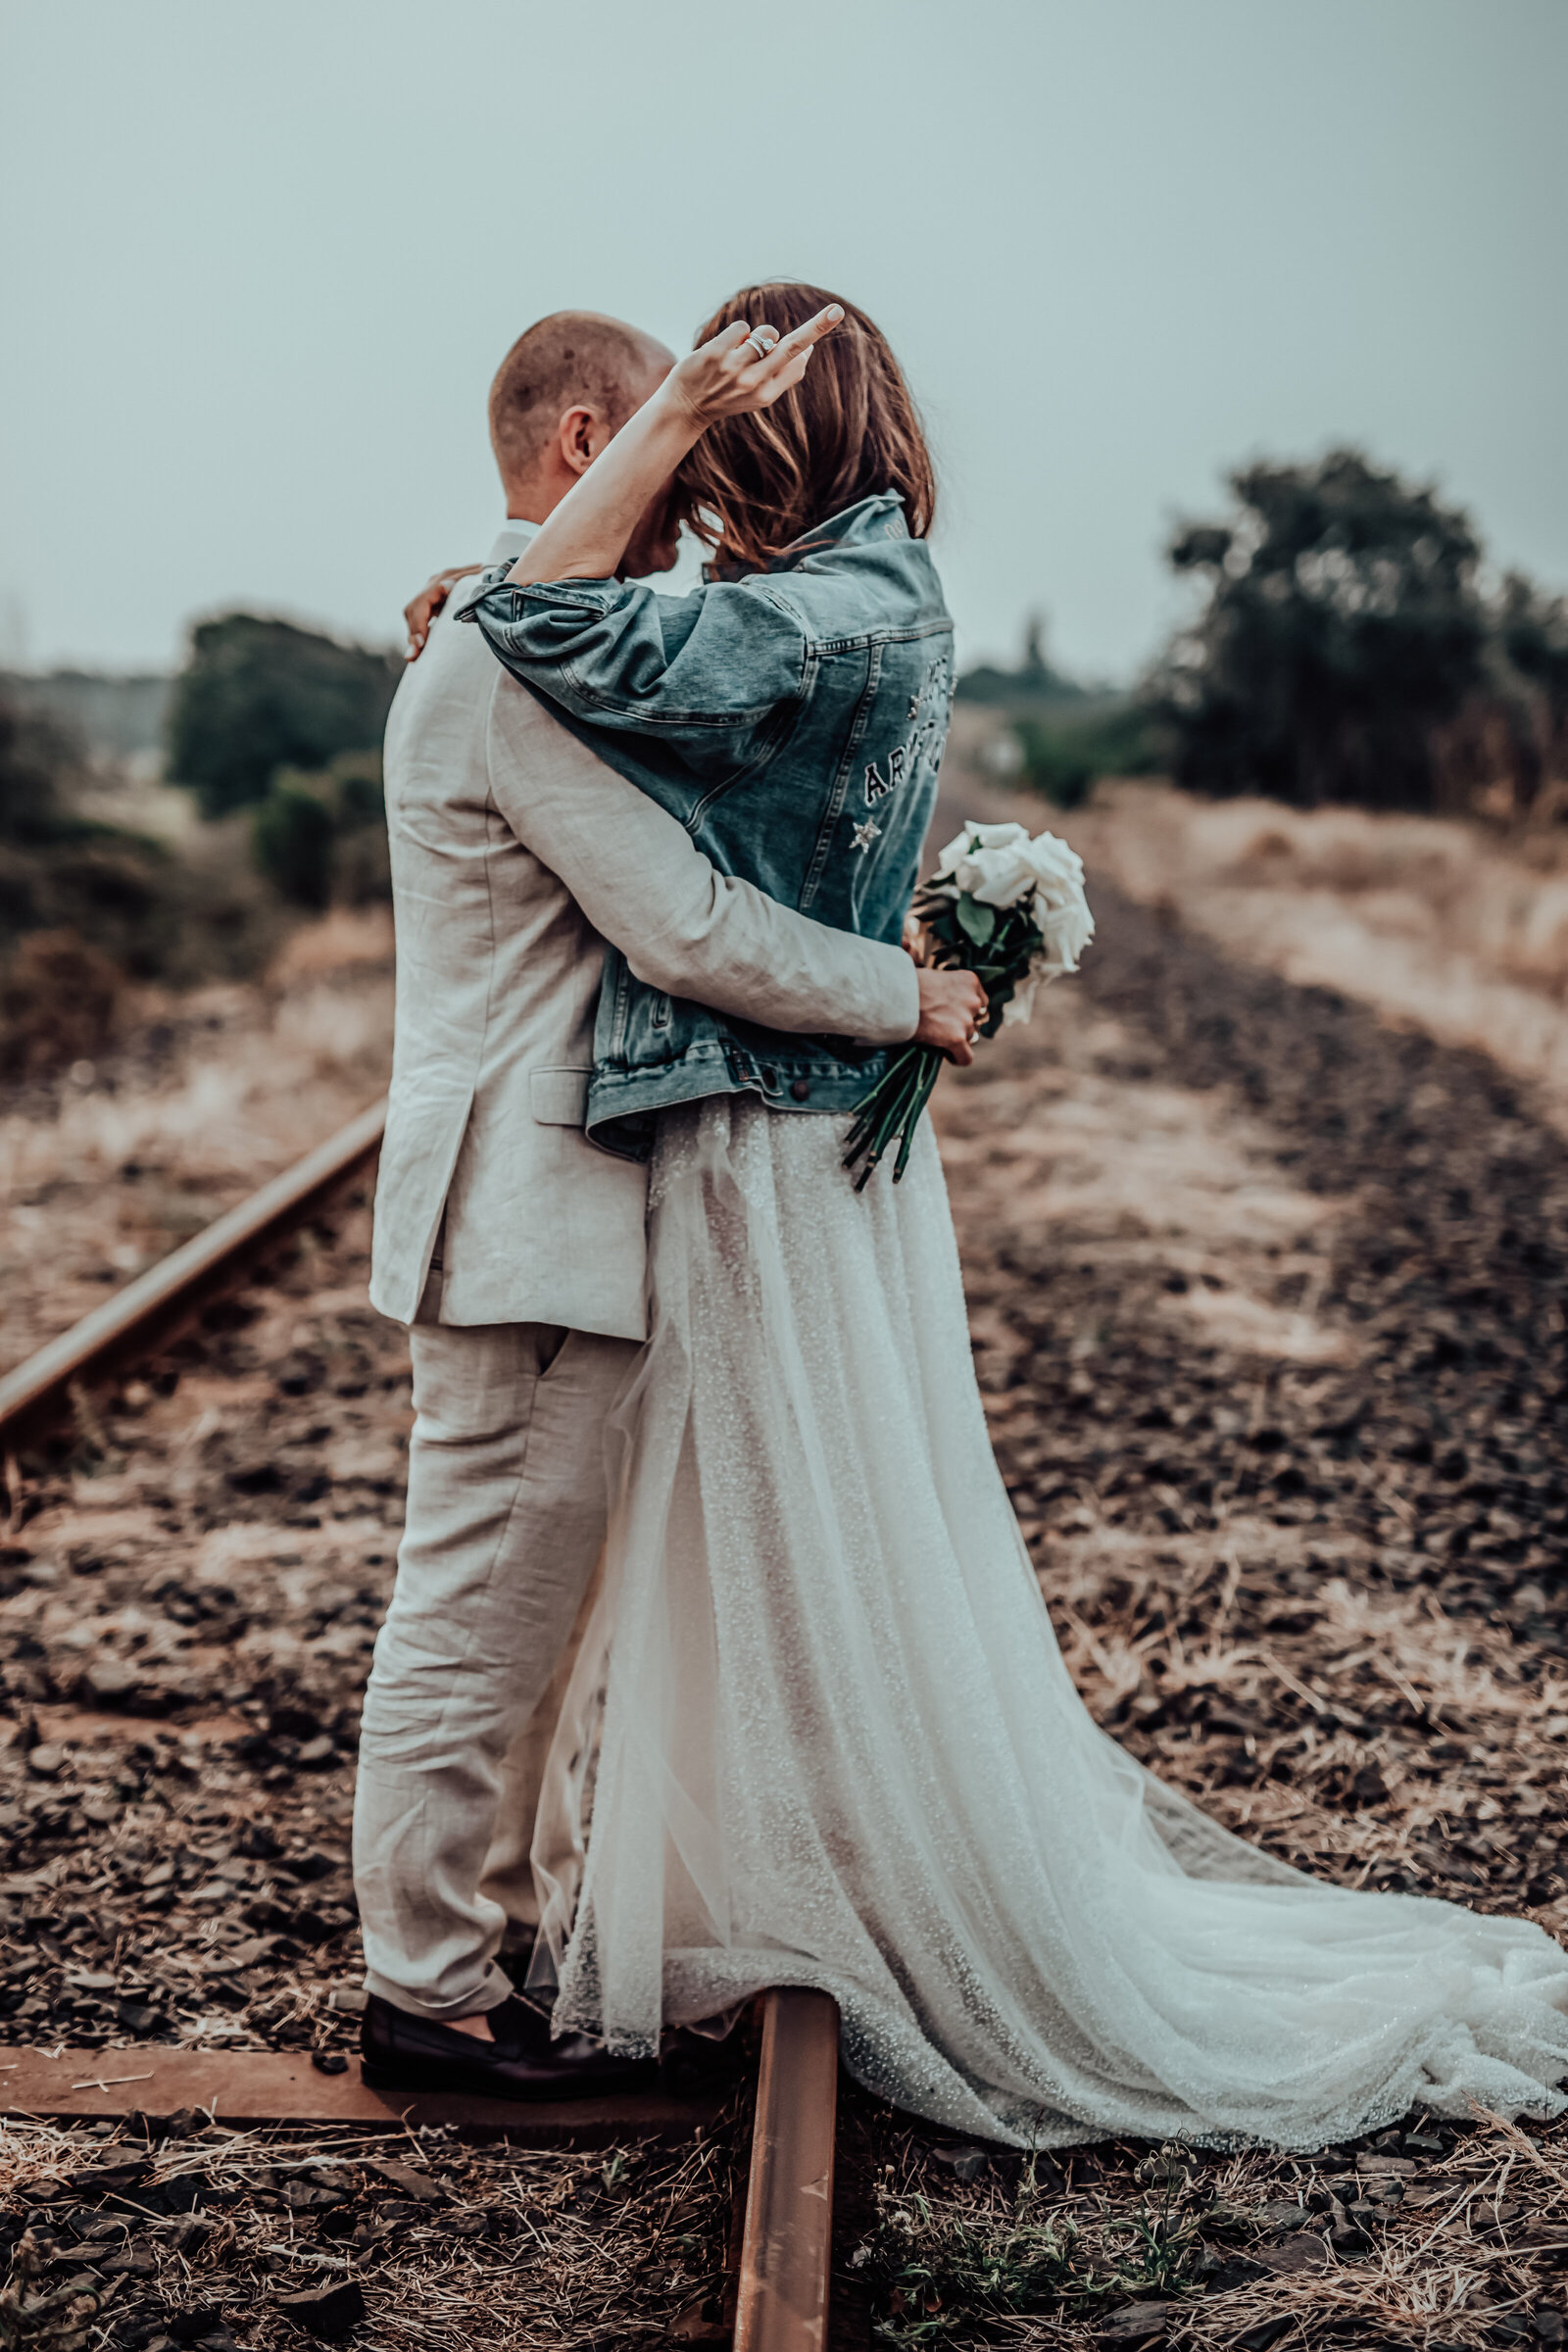 Wedding portrait on train tracks with dreamy background